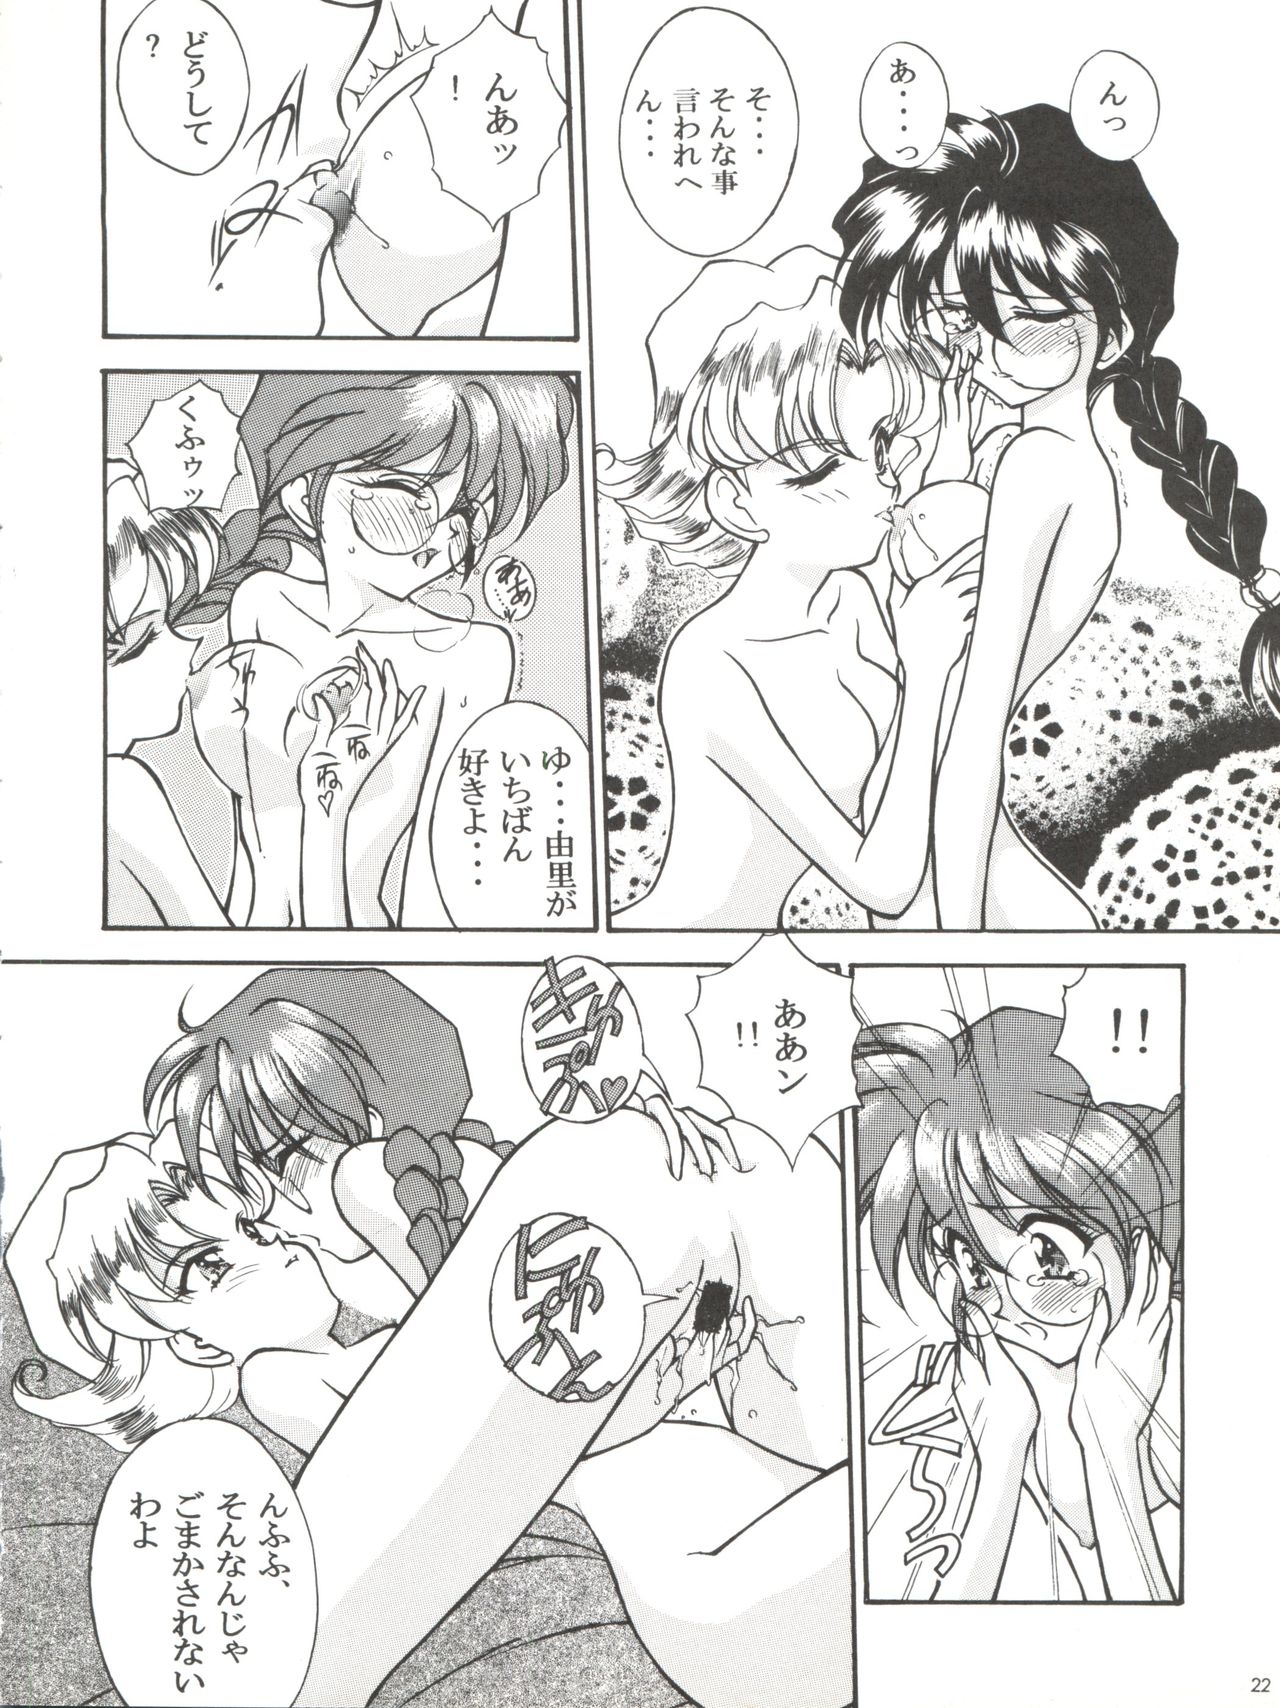 [LUCK&PLUCK!Co. (Amanomiya Haruka)] Li Kohran no Gottsuee Kanji (Sakura Wars) [1997-05-25] 22